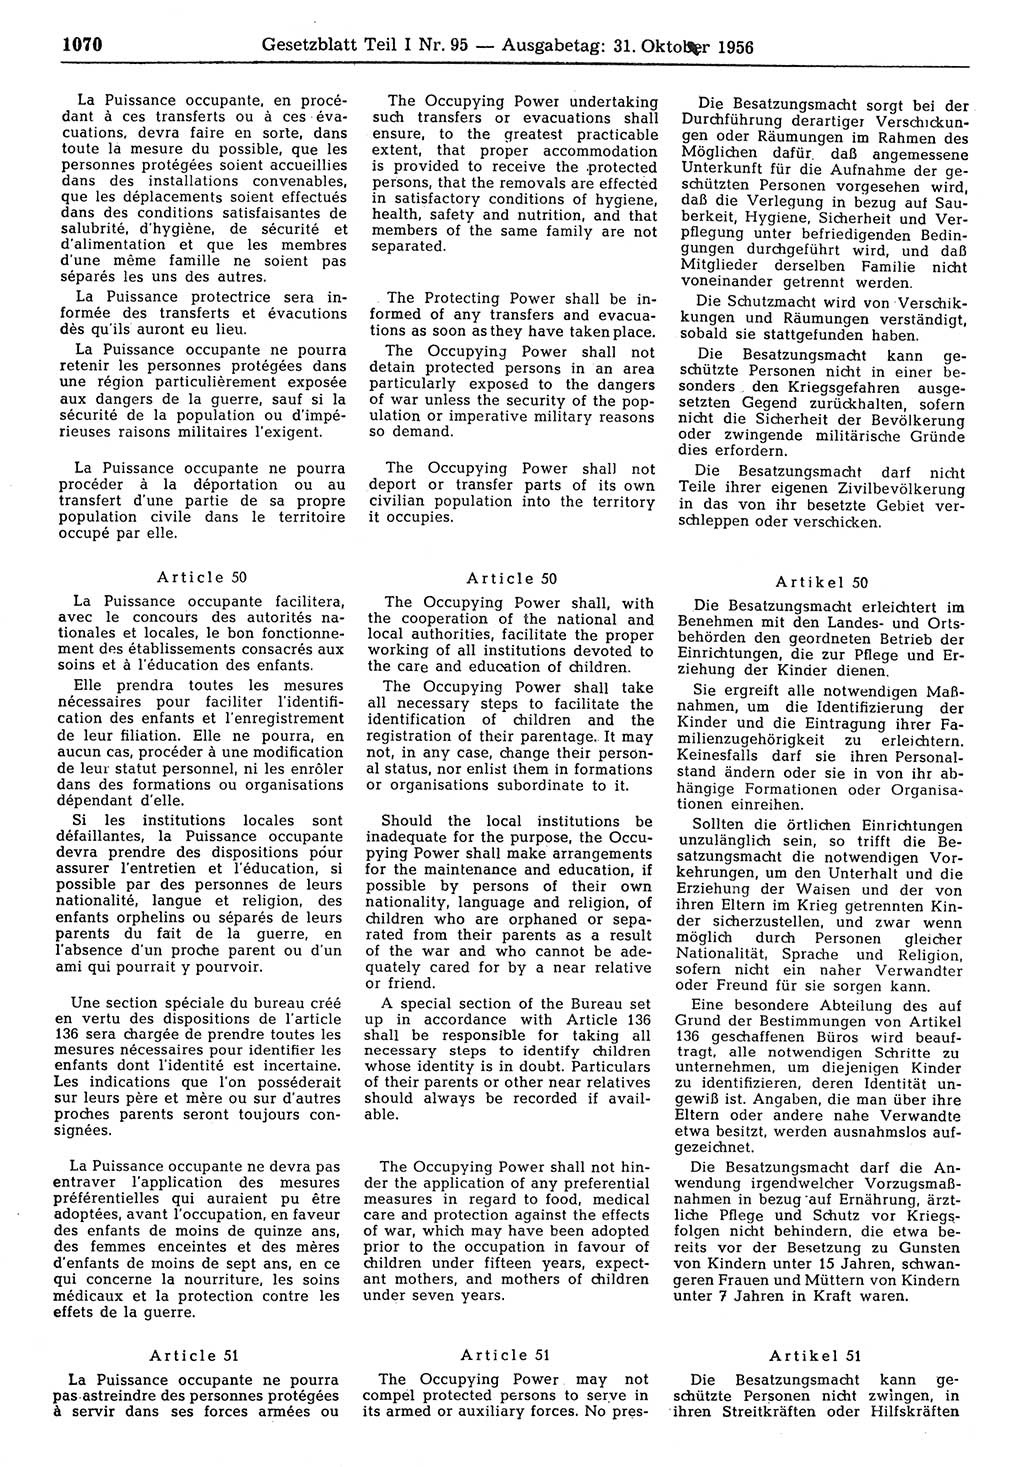 Gesetzblatt (GBl.) der Deutschen Demokratischen Republik (DDR) Teil Ⅰ 1956, Seite 1070 (GBl. DDR Ⅰ 1956, S. 1070)